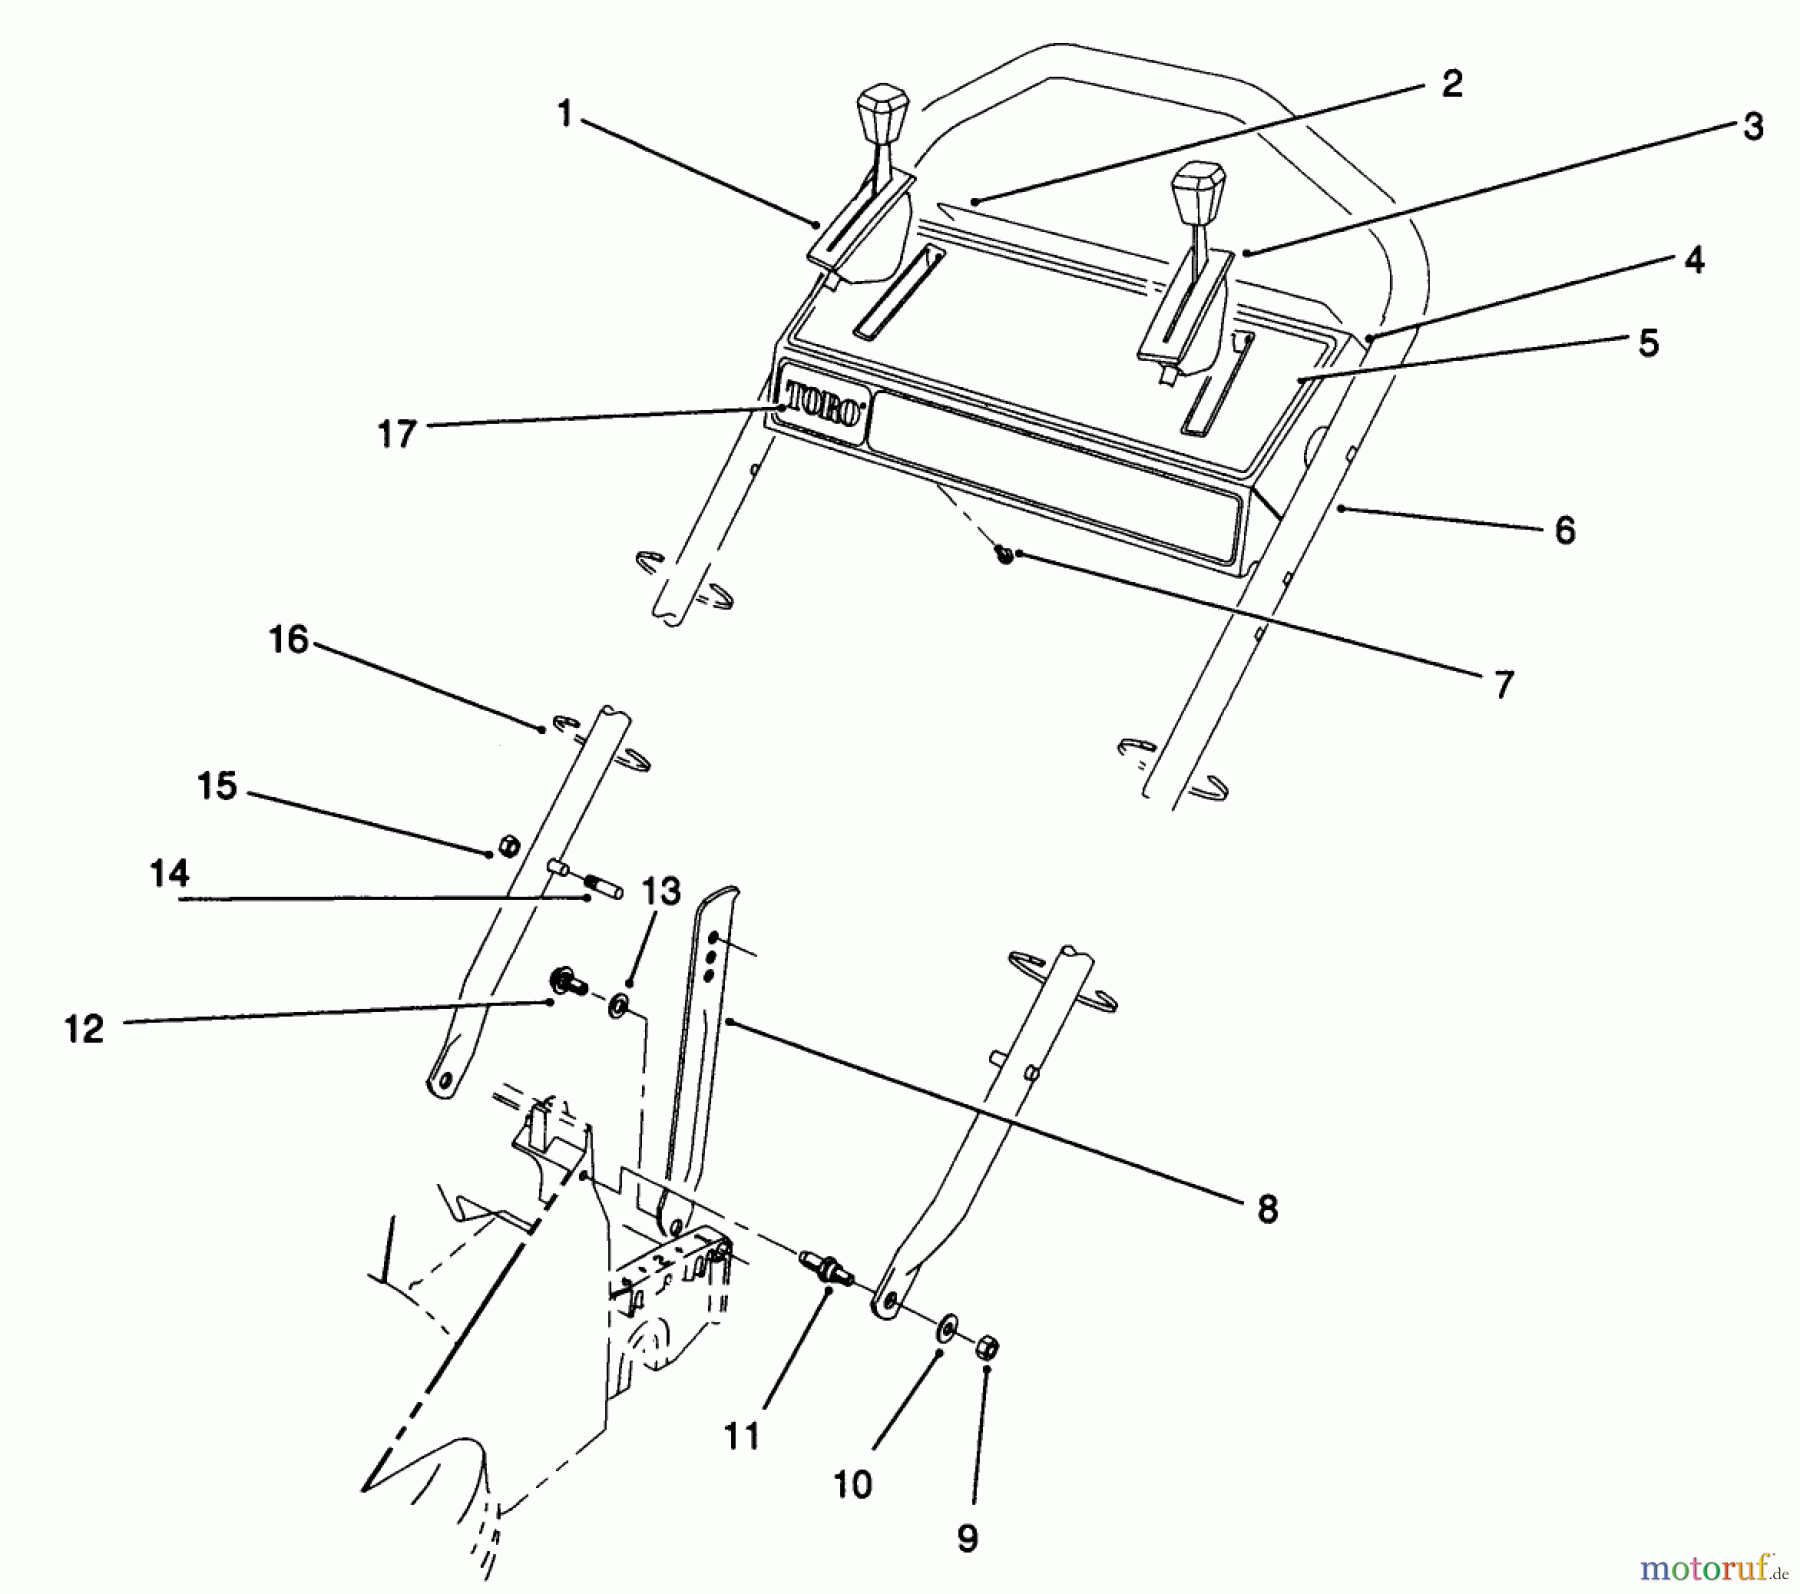  Toro Neu Mowers, Walk-Behind Seite 2 26621B - Toro Lawnmower, 1991 (1000001-1999999) HANDLE ASSEMBLY